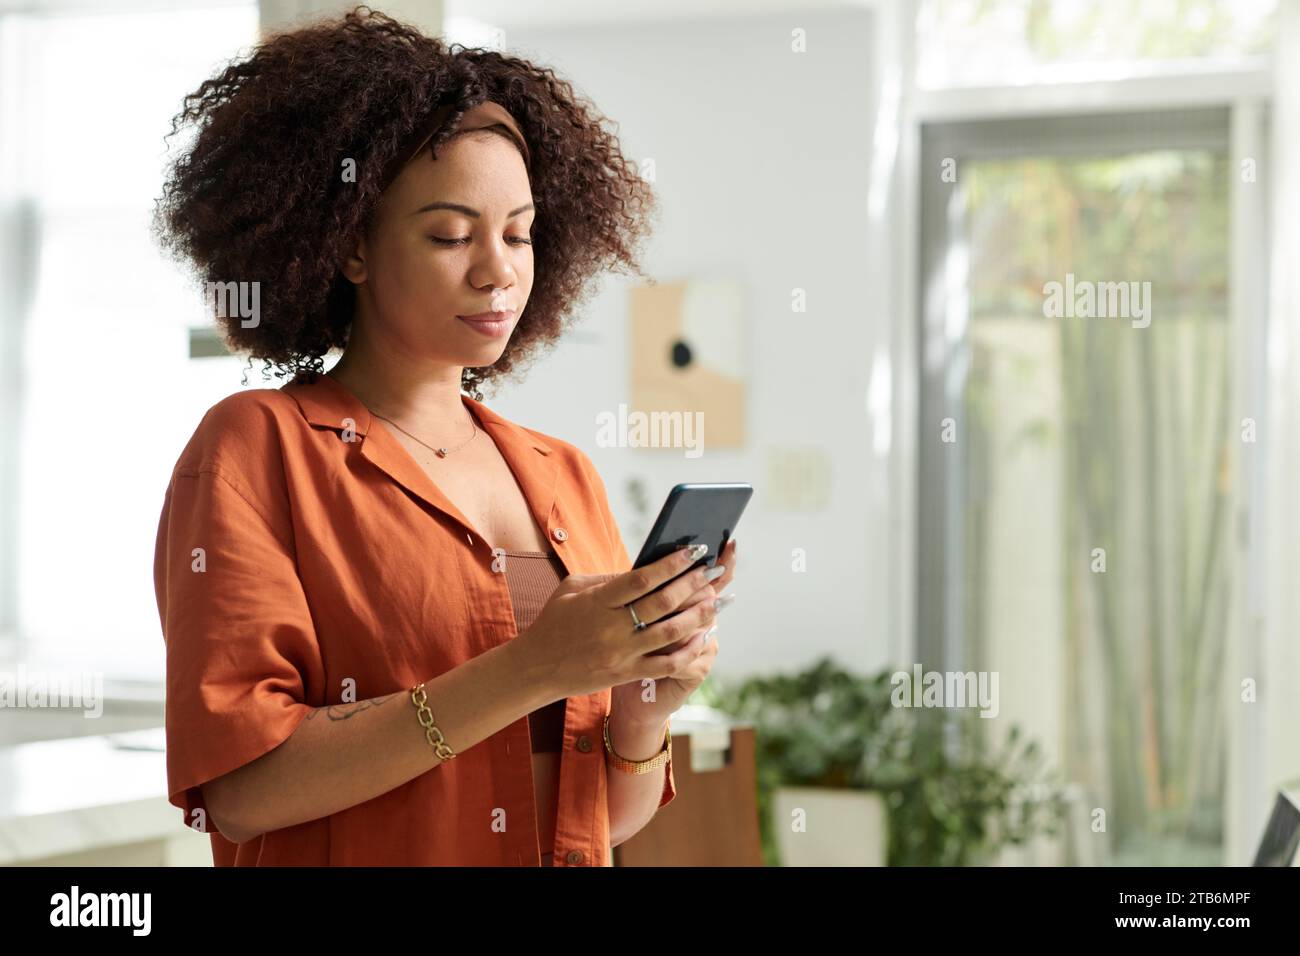 Portrait de femme souriante lisant des messages texte de partenaire sur smartphone Banque D'Images